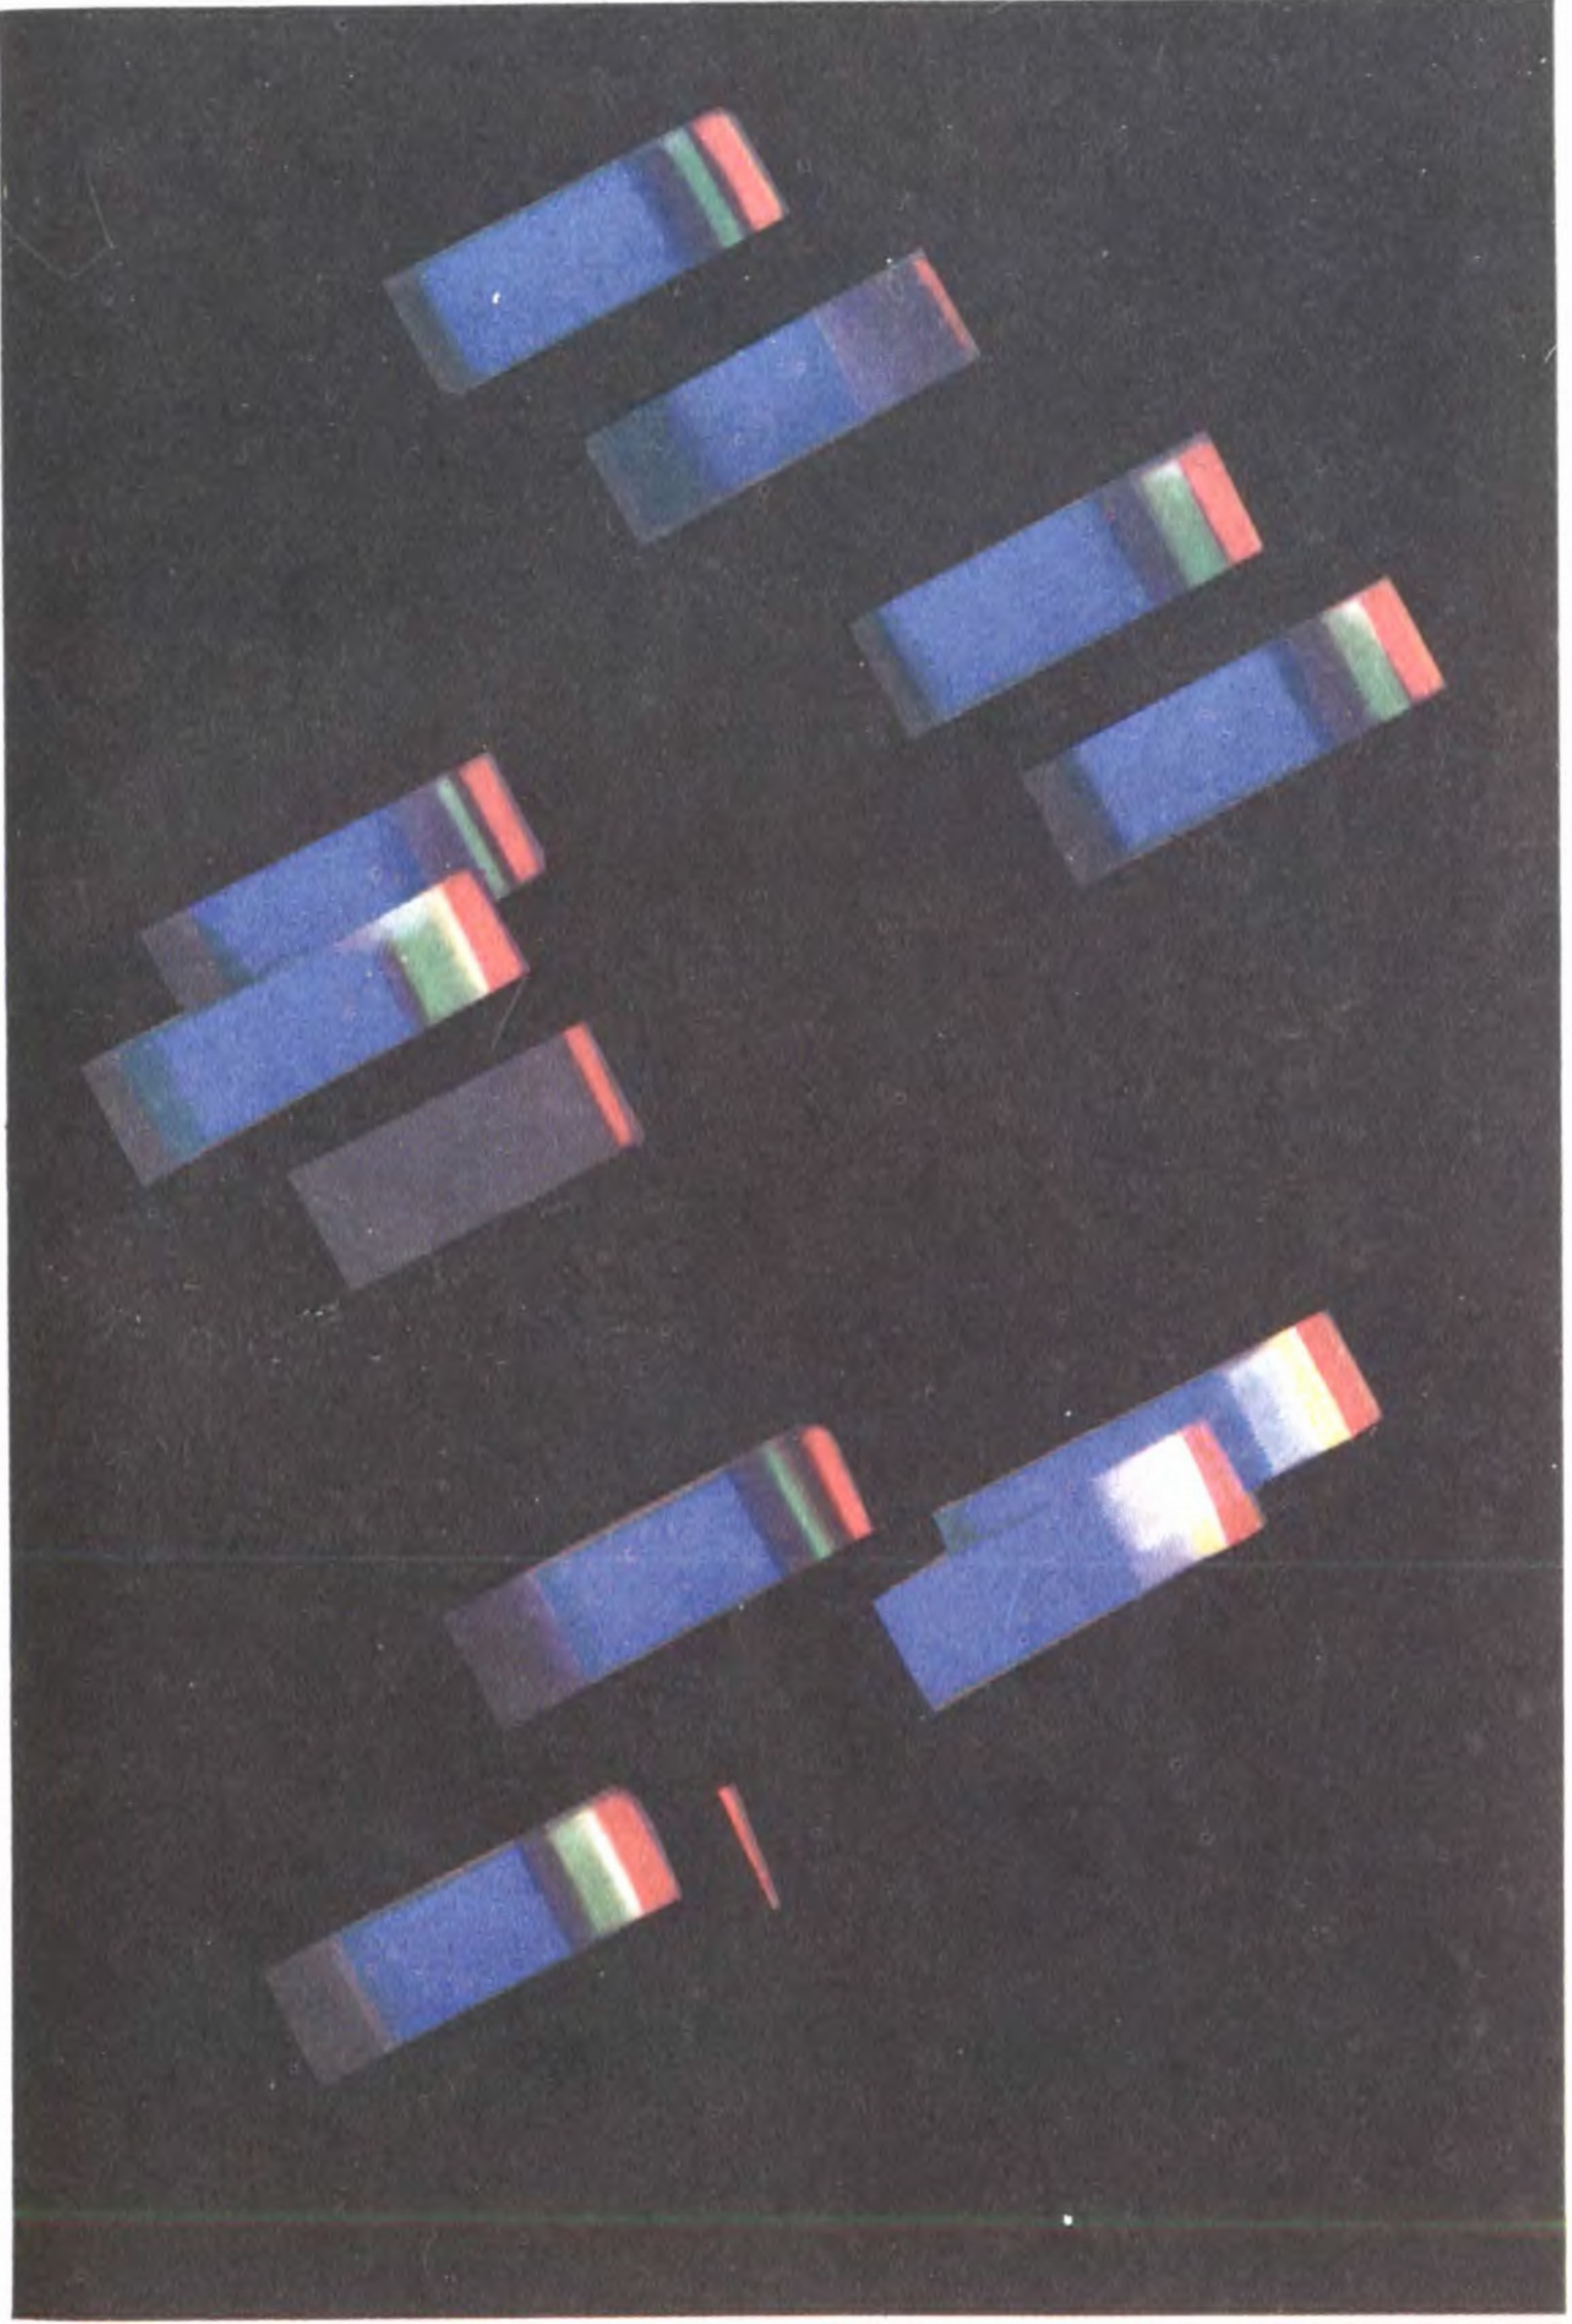 Цветная фотография звездных спектров, полученная с помощью большой призмы, поставленной перед объективом крупного телескопа. Фотография Нассау (США)